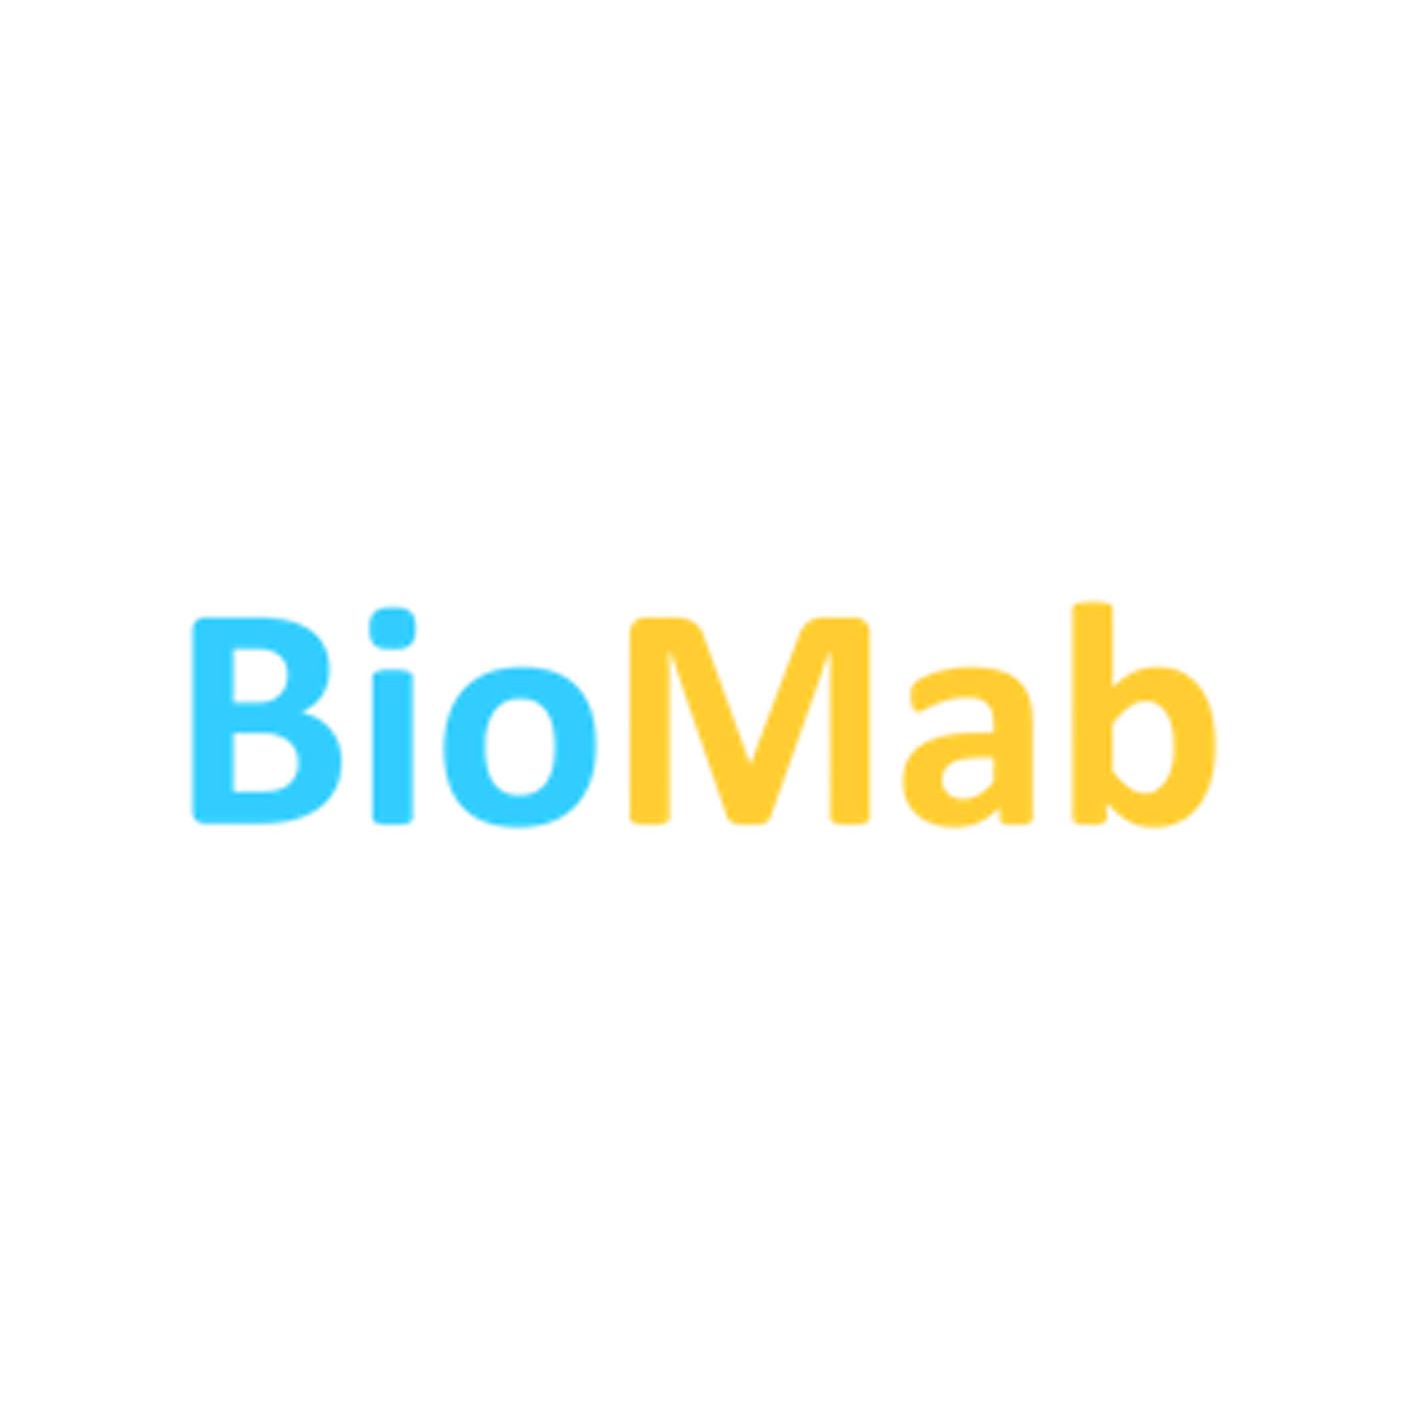 BioMab液态活检平台和自体细胞治疗技术